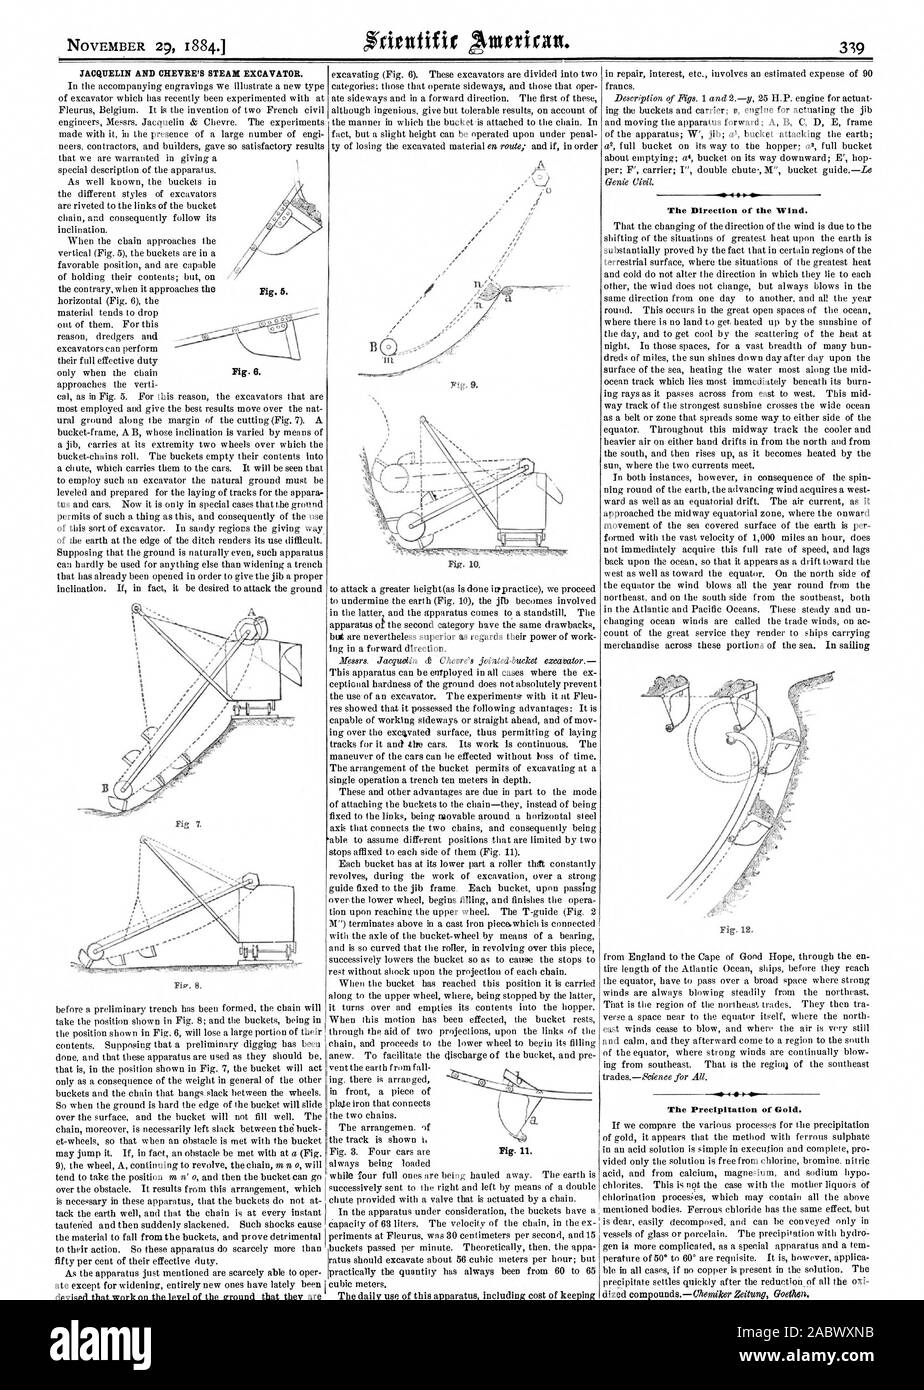 JACQUELIN Y CHEVRE la excavadora de vapor. La dirección del viento. Fig. 12. La Precipitación de oro. Fig. 5. Fig. O. Fig. ., Scientific American, 1884-11-29 Foto de stock